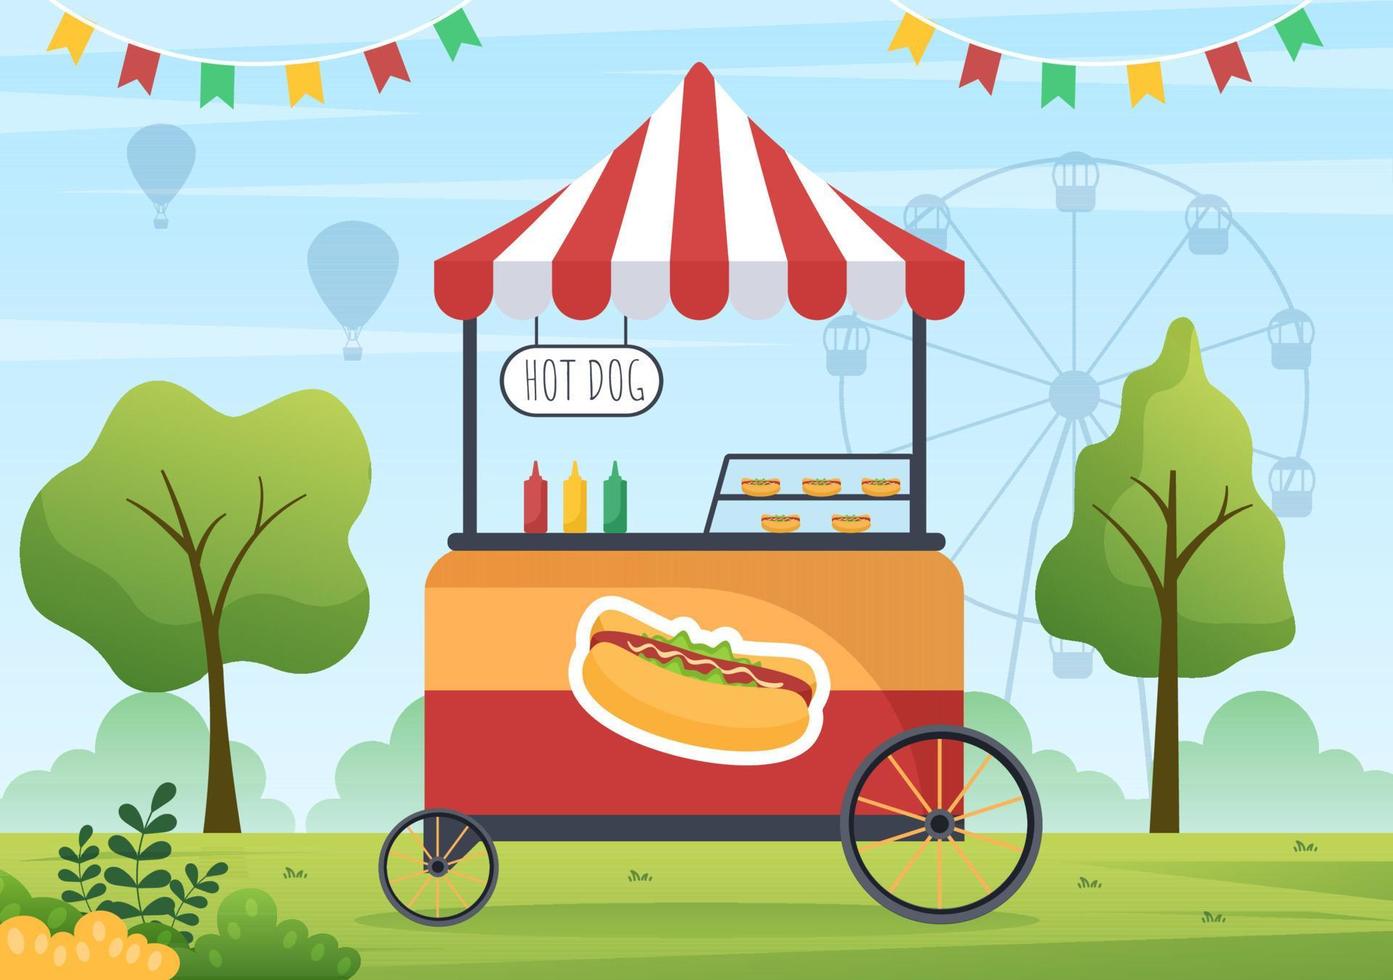 persone che mangiano in cibo di strada all'aperto che serve fast food come pizza, hamburger, hot dog o tacos in un'illustrazione piana del manifesto del fondo del fumetto vettore